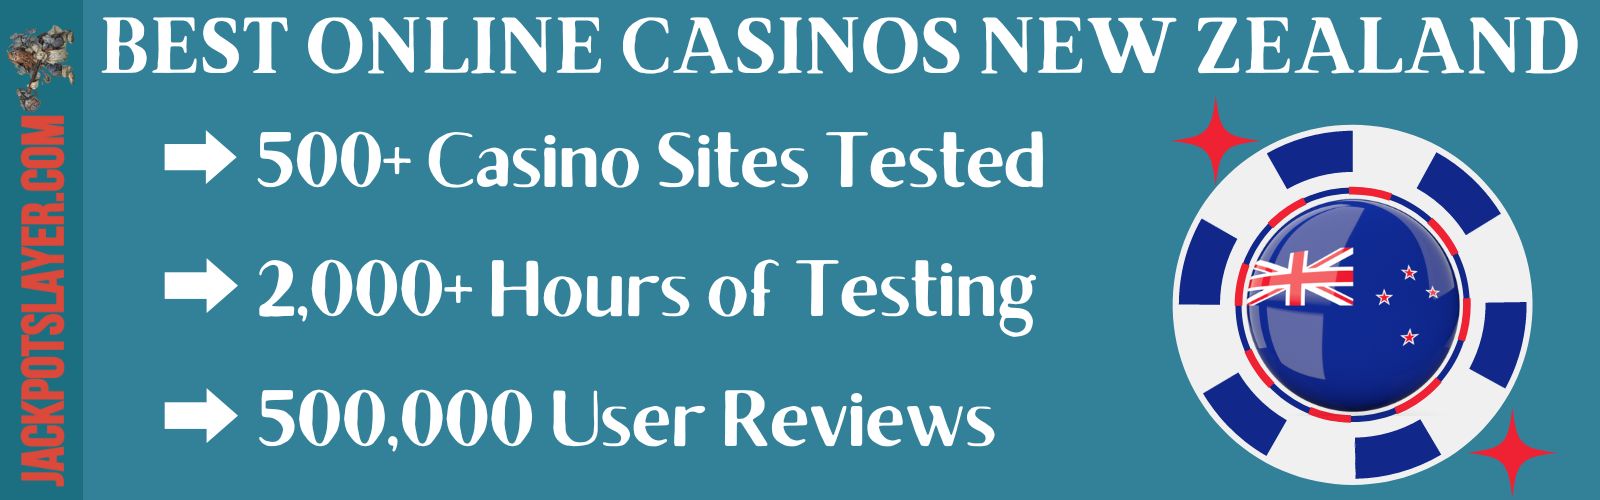 Online Casinos In New Zealand